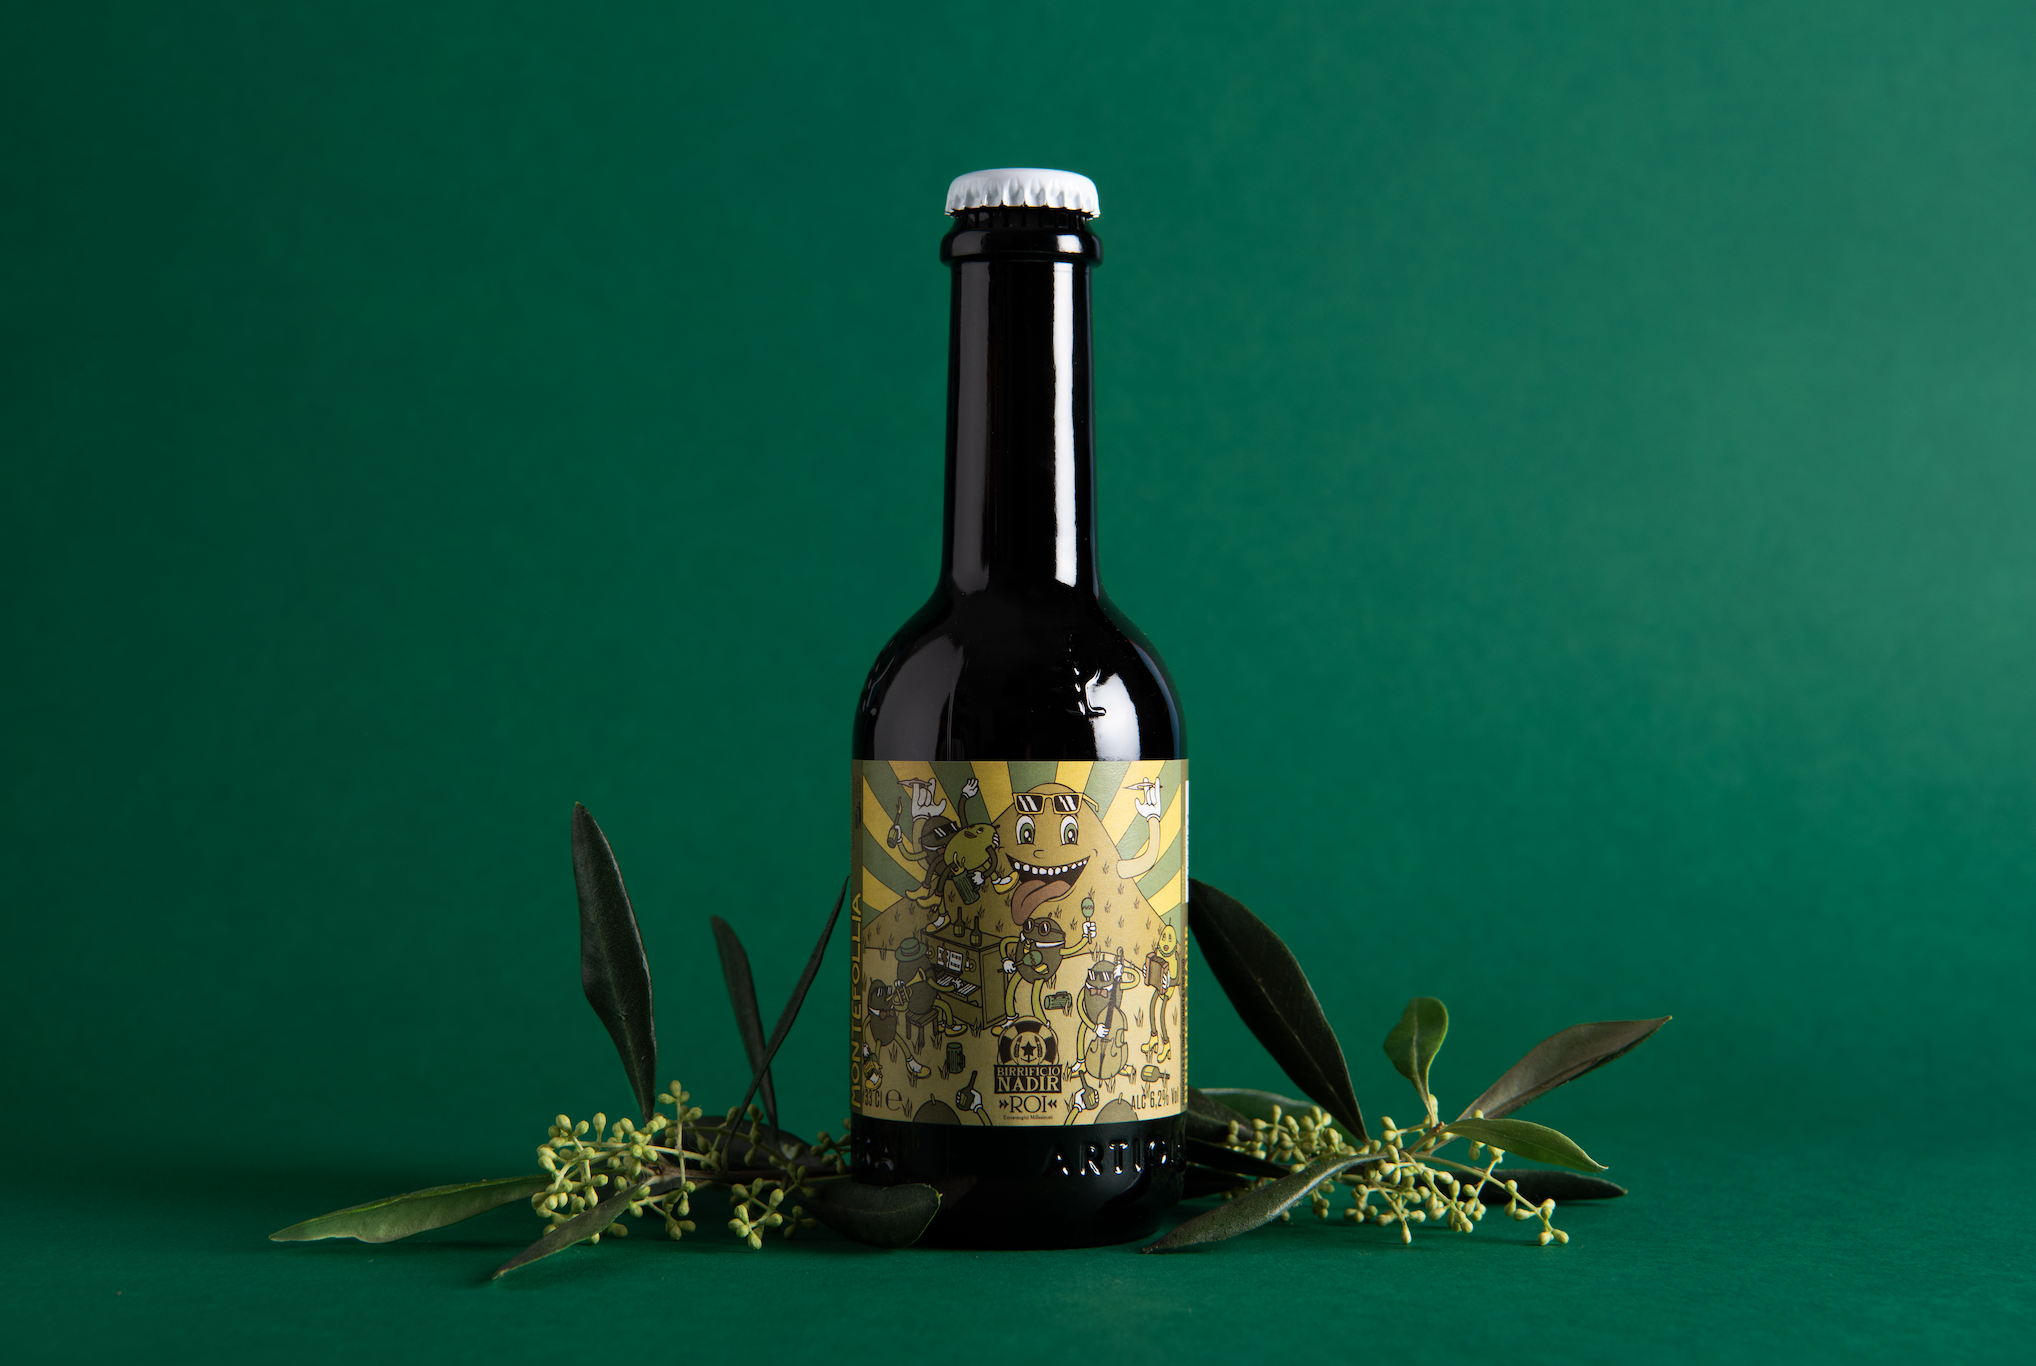 Si chiama “Montefollia” e ha radici liguri: la particolare birra alle foglie d’olivo